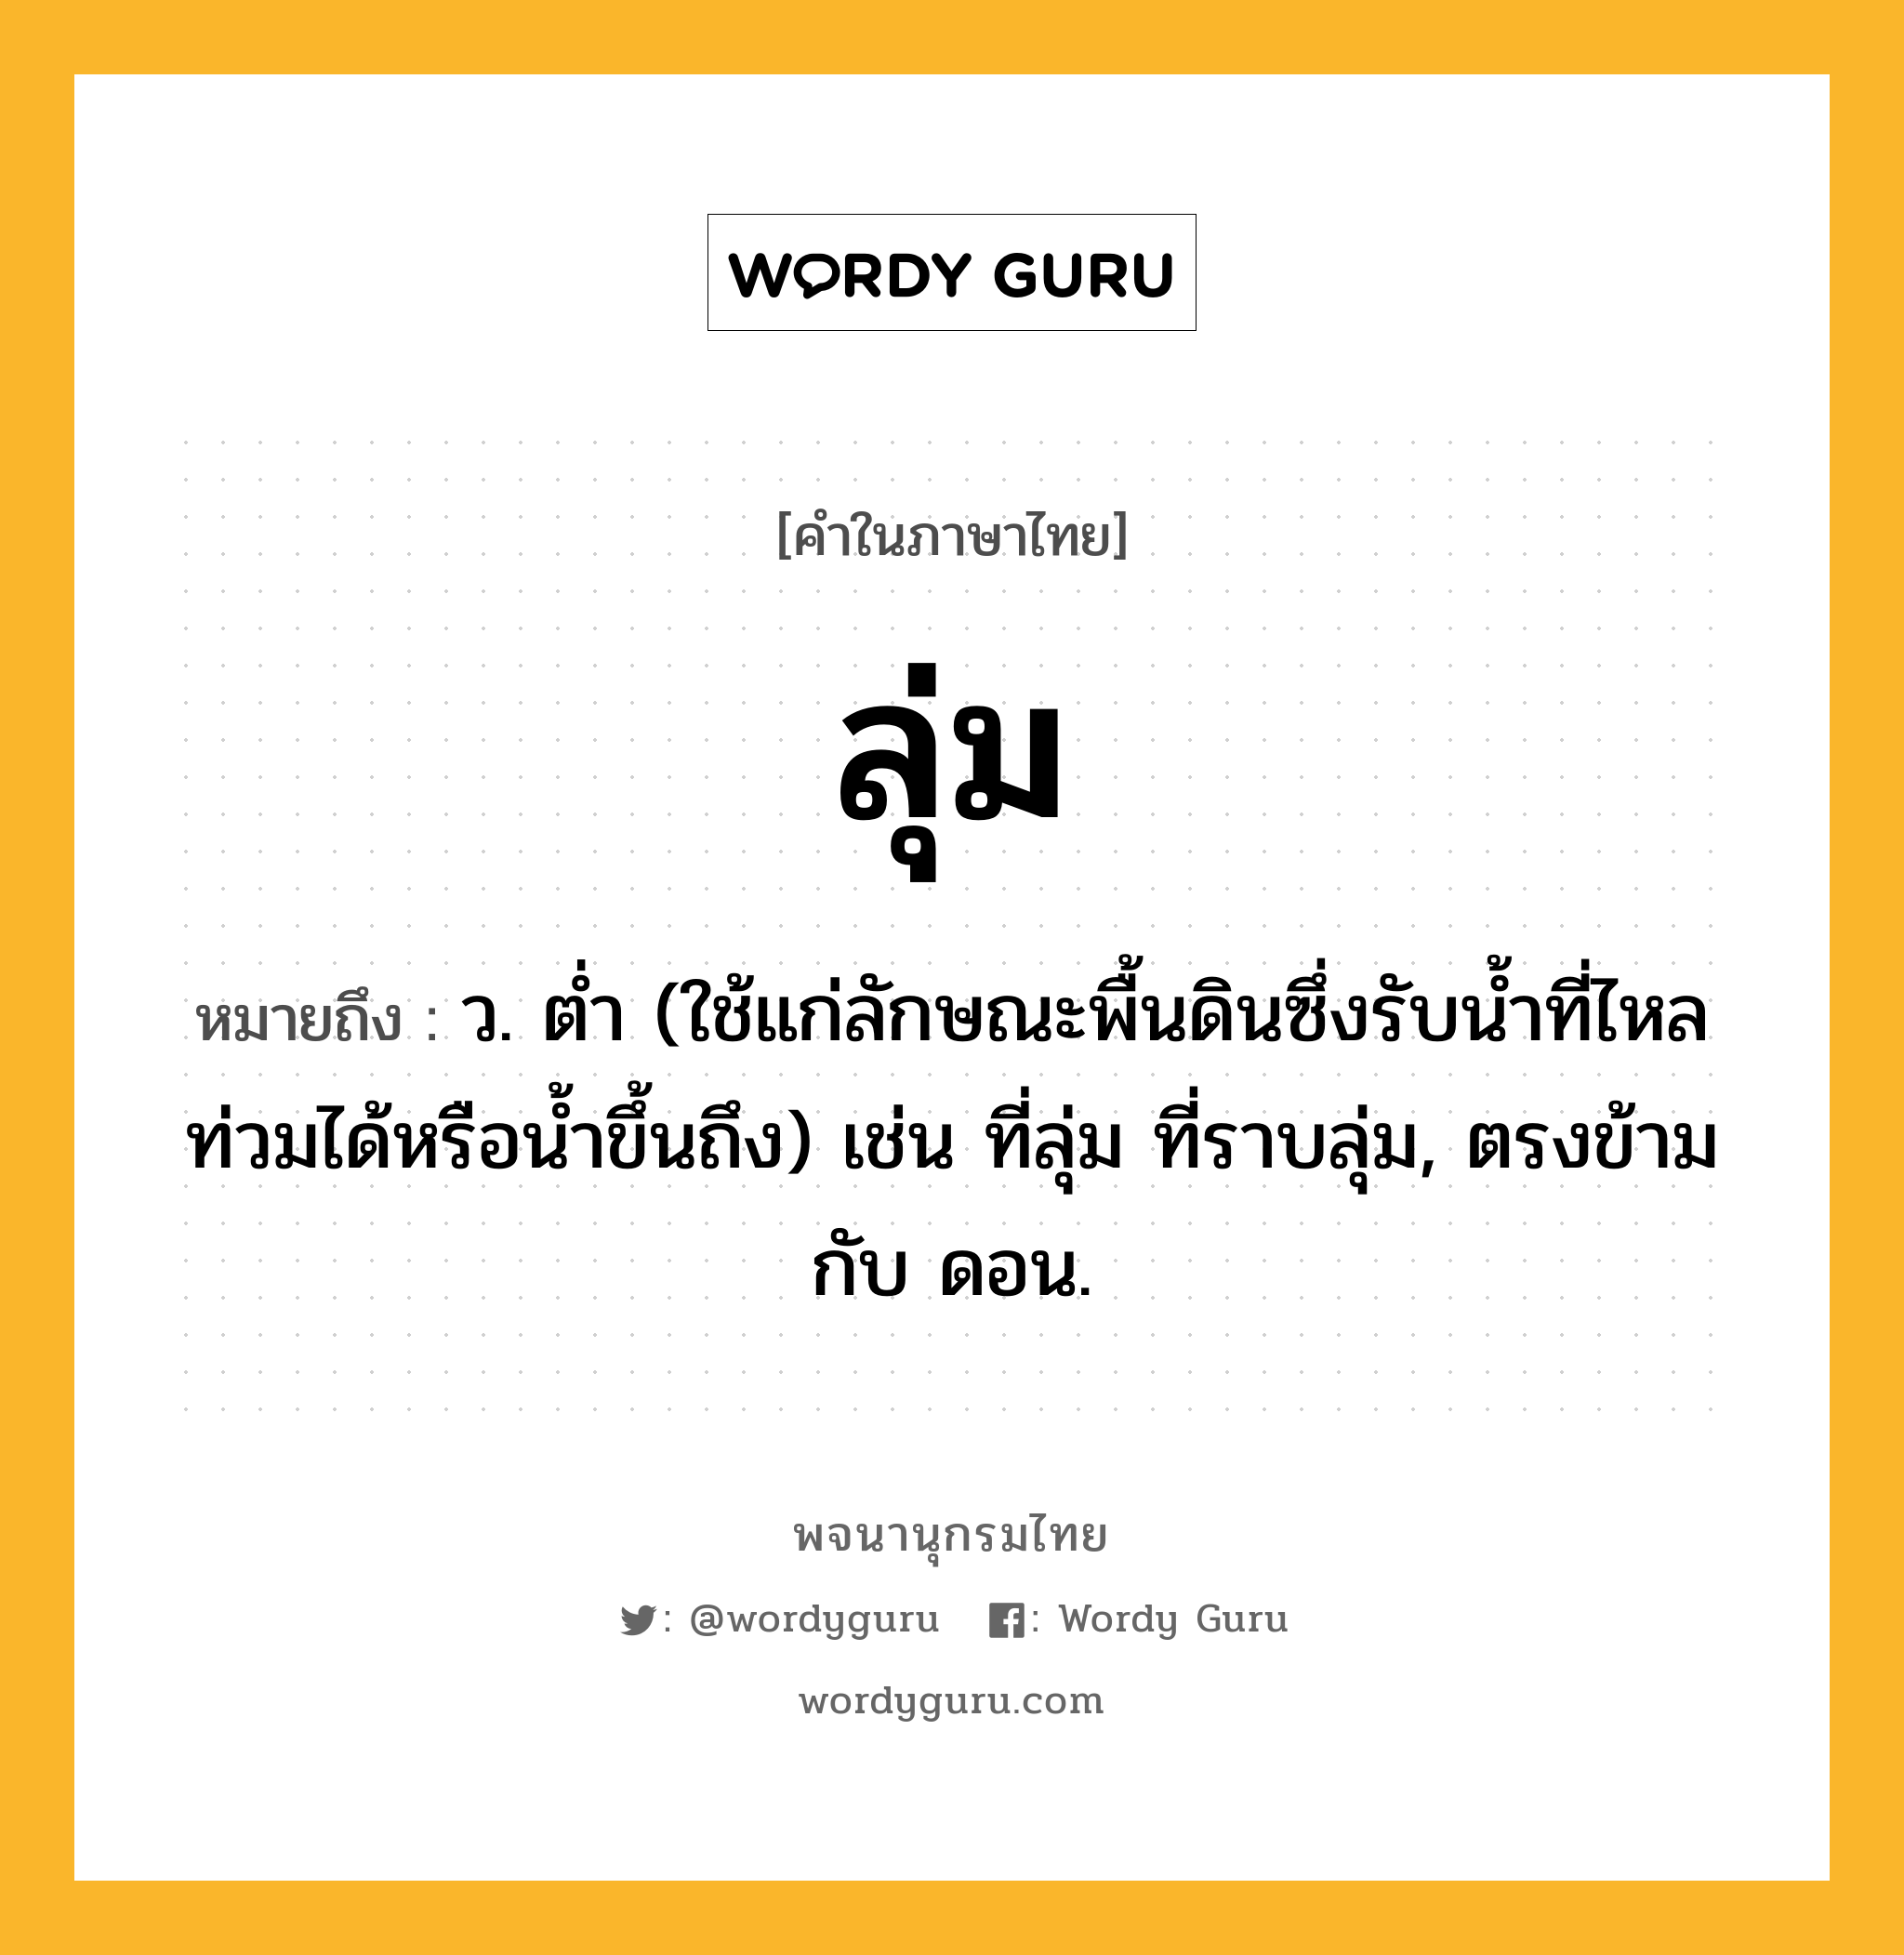 ลุ่ม หมายถึงอะไร?, คำในภาษาไทย ลุ่ม หมายถึง ว. ตํ่า (ใช้แก่ลักษณะพื้นดินซึ่งรับนํ้าที่ไหลท่วมได้หรือนํ้าขึ้นถึง) เช่น ที่ลุ่ม ที่ราบลุ่ม, ตรงข้ามกับ ดอน.